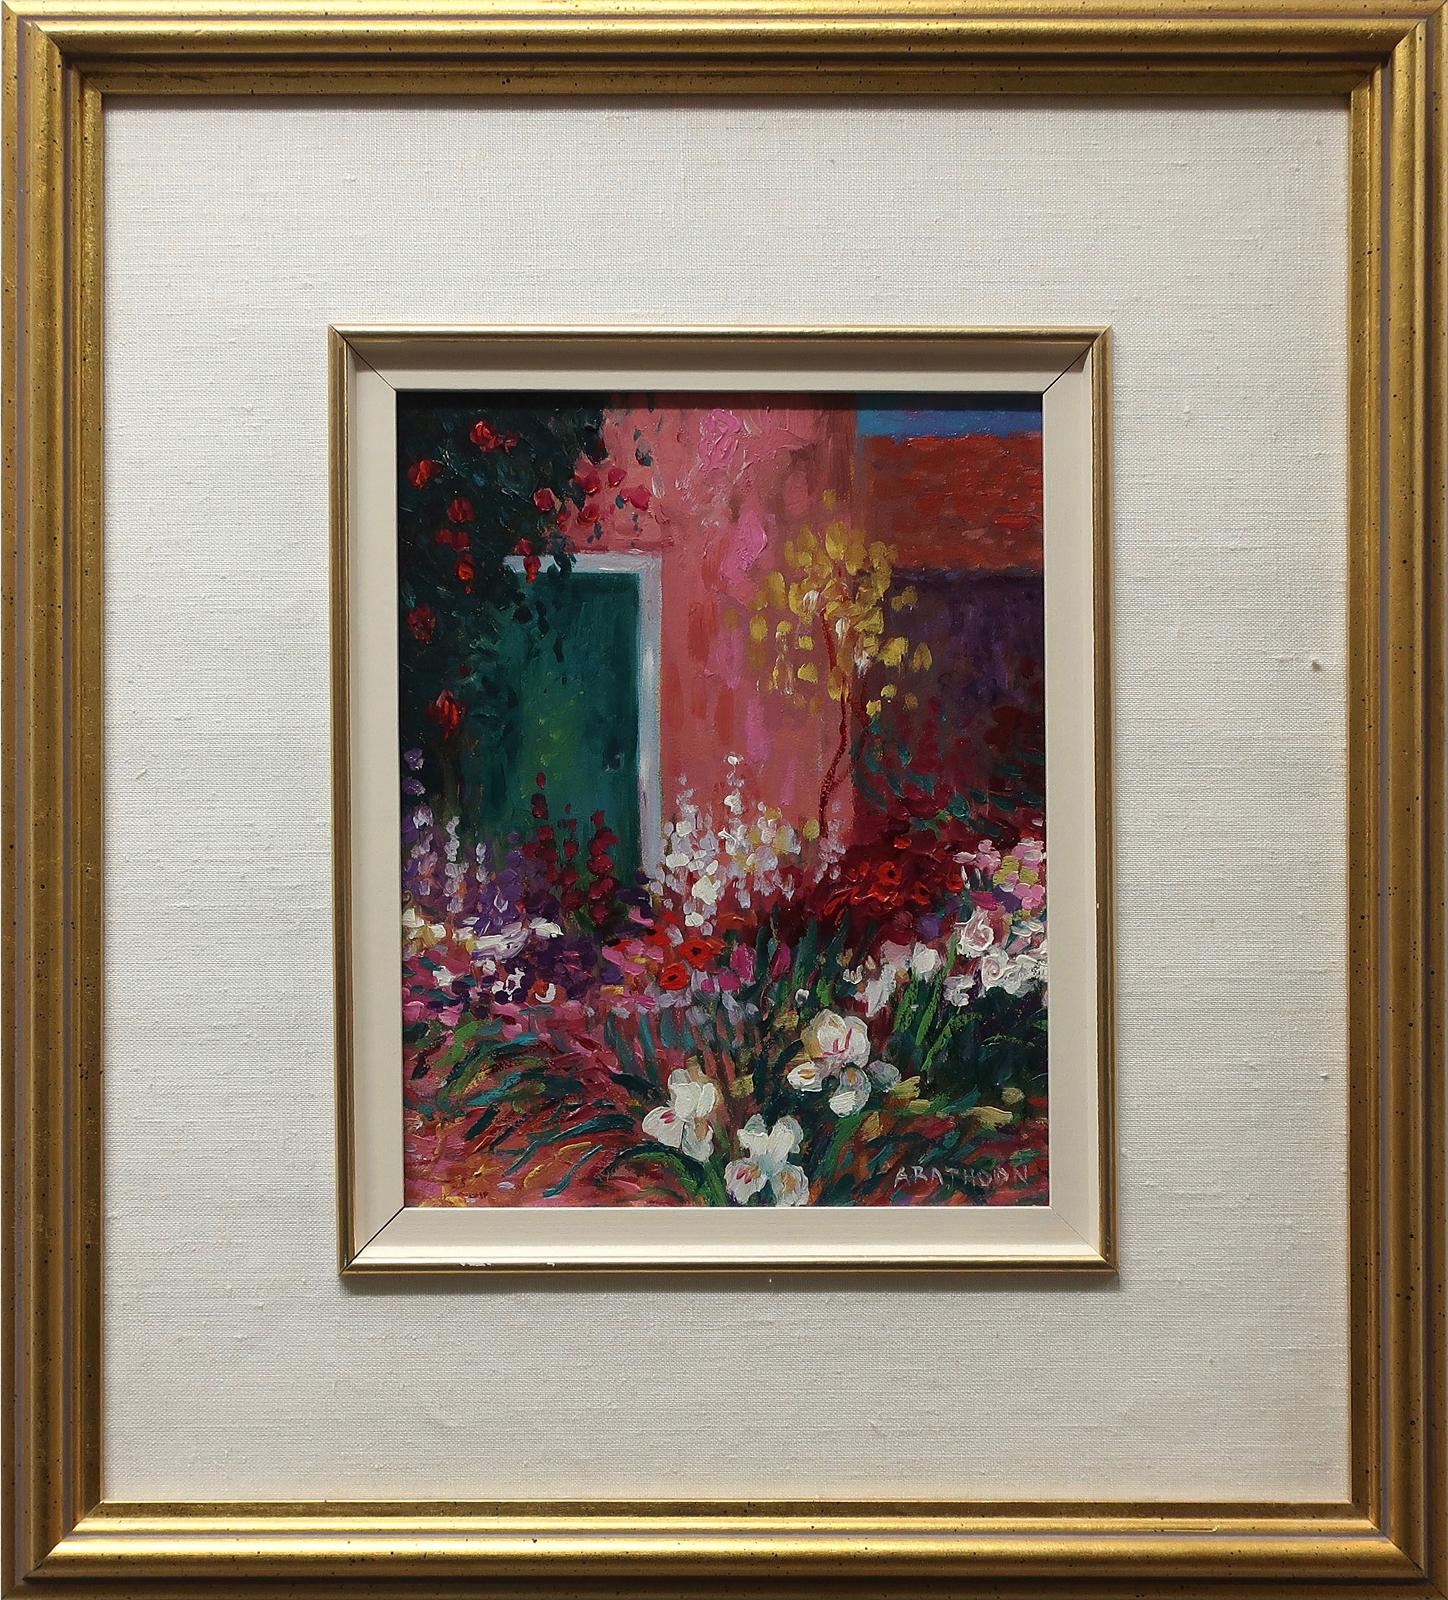 David Arathoon (1959) - Flowers By The Green Door